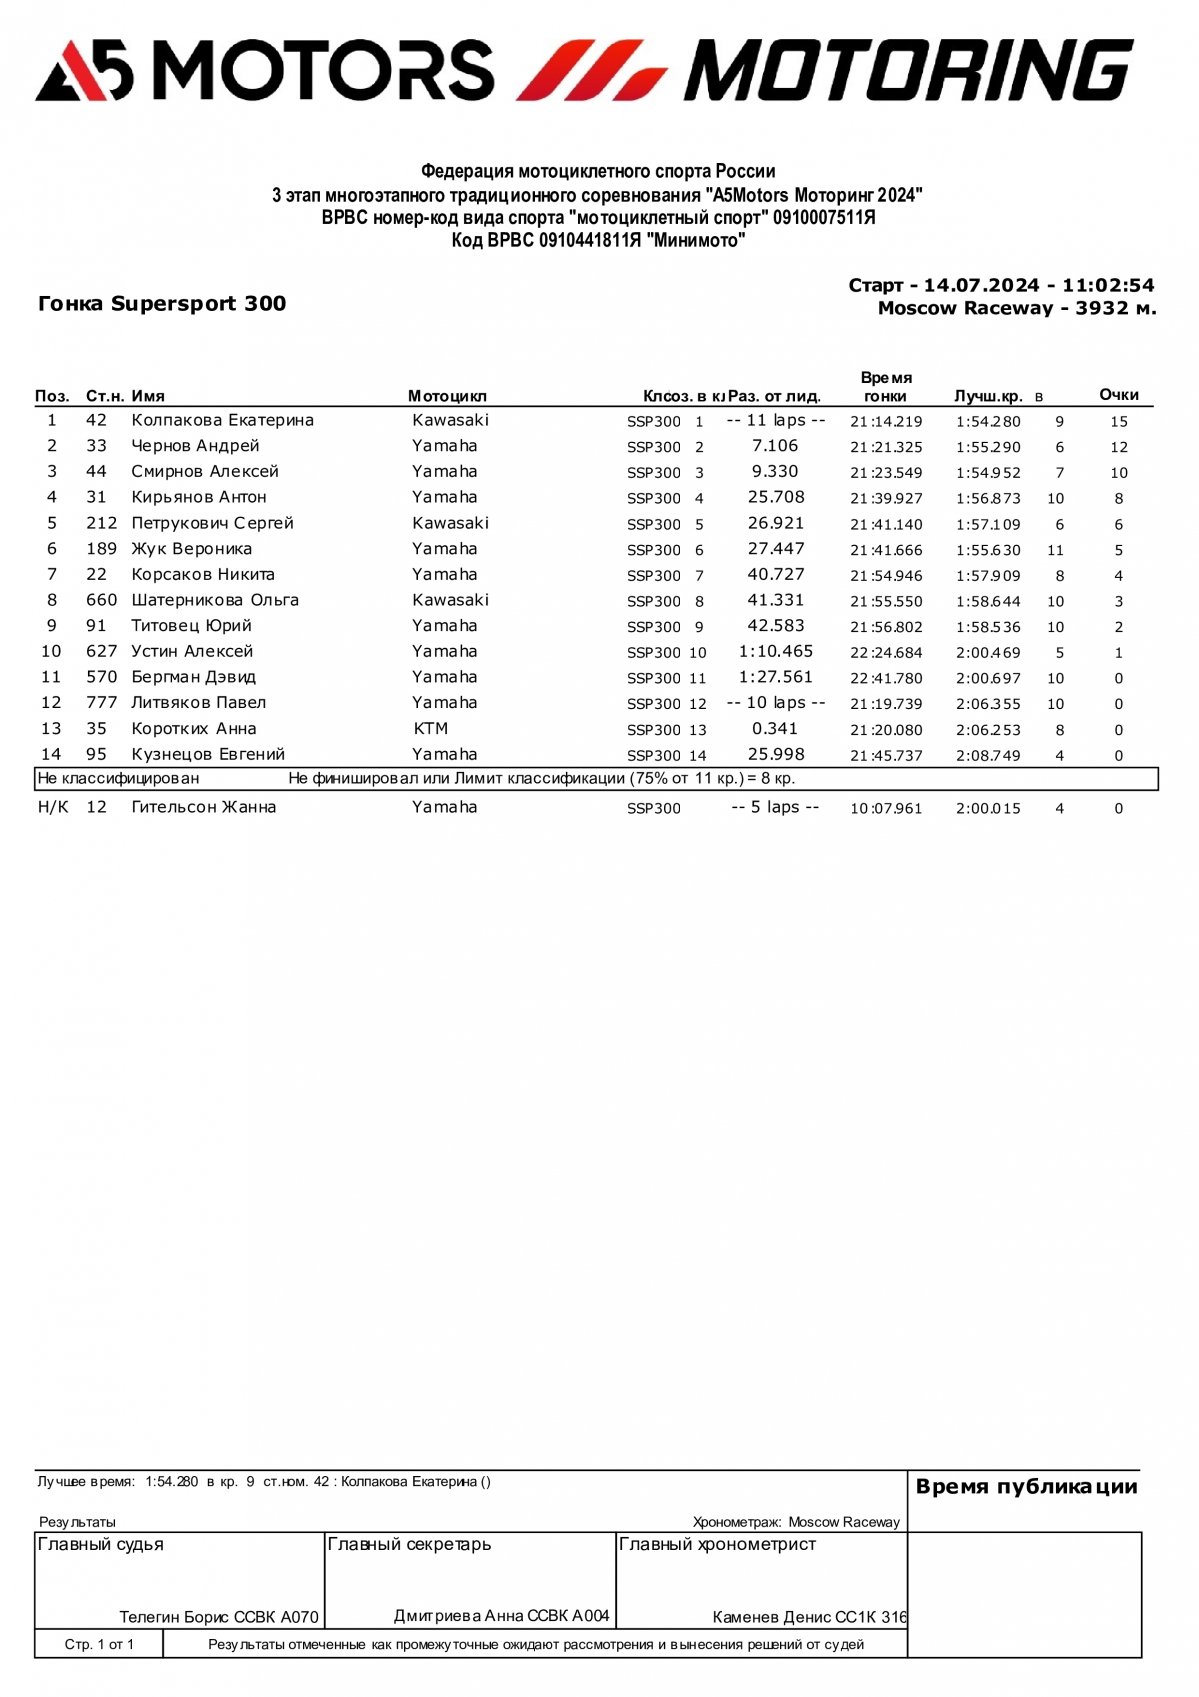 Предварительные результаты гонки 3 этапа чемпионата A5Motors Motoring «Минимото»